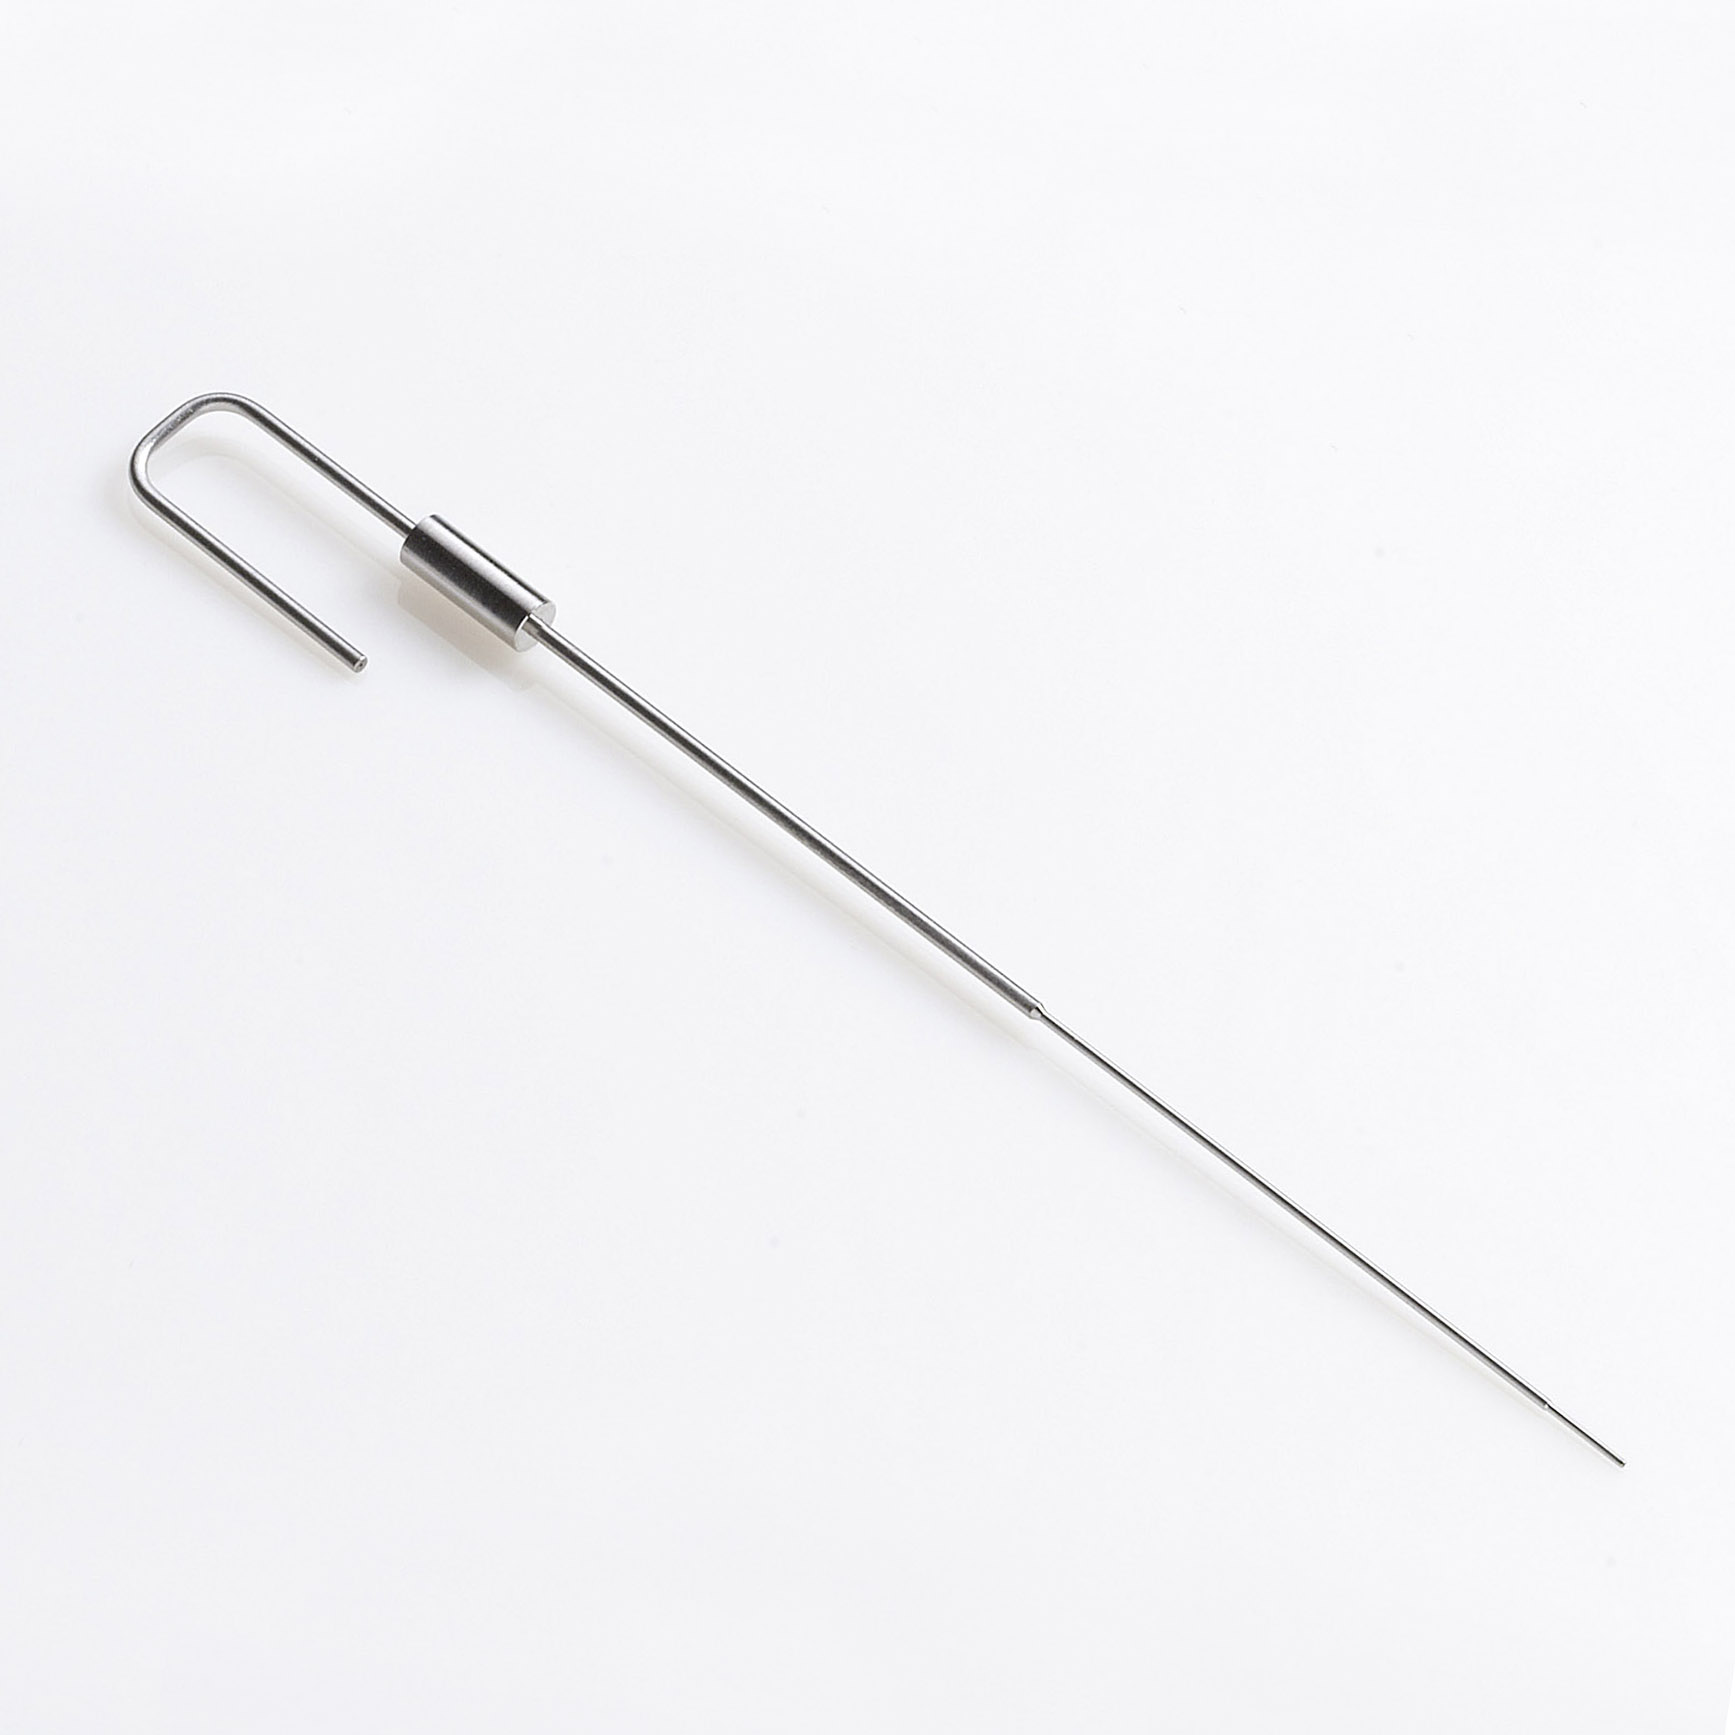 Injector Needle